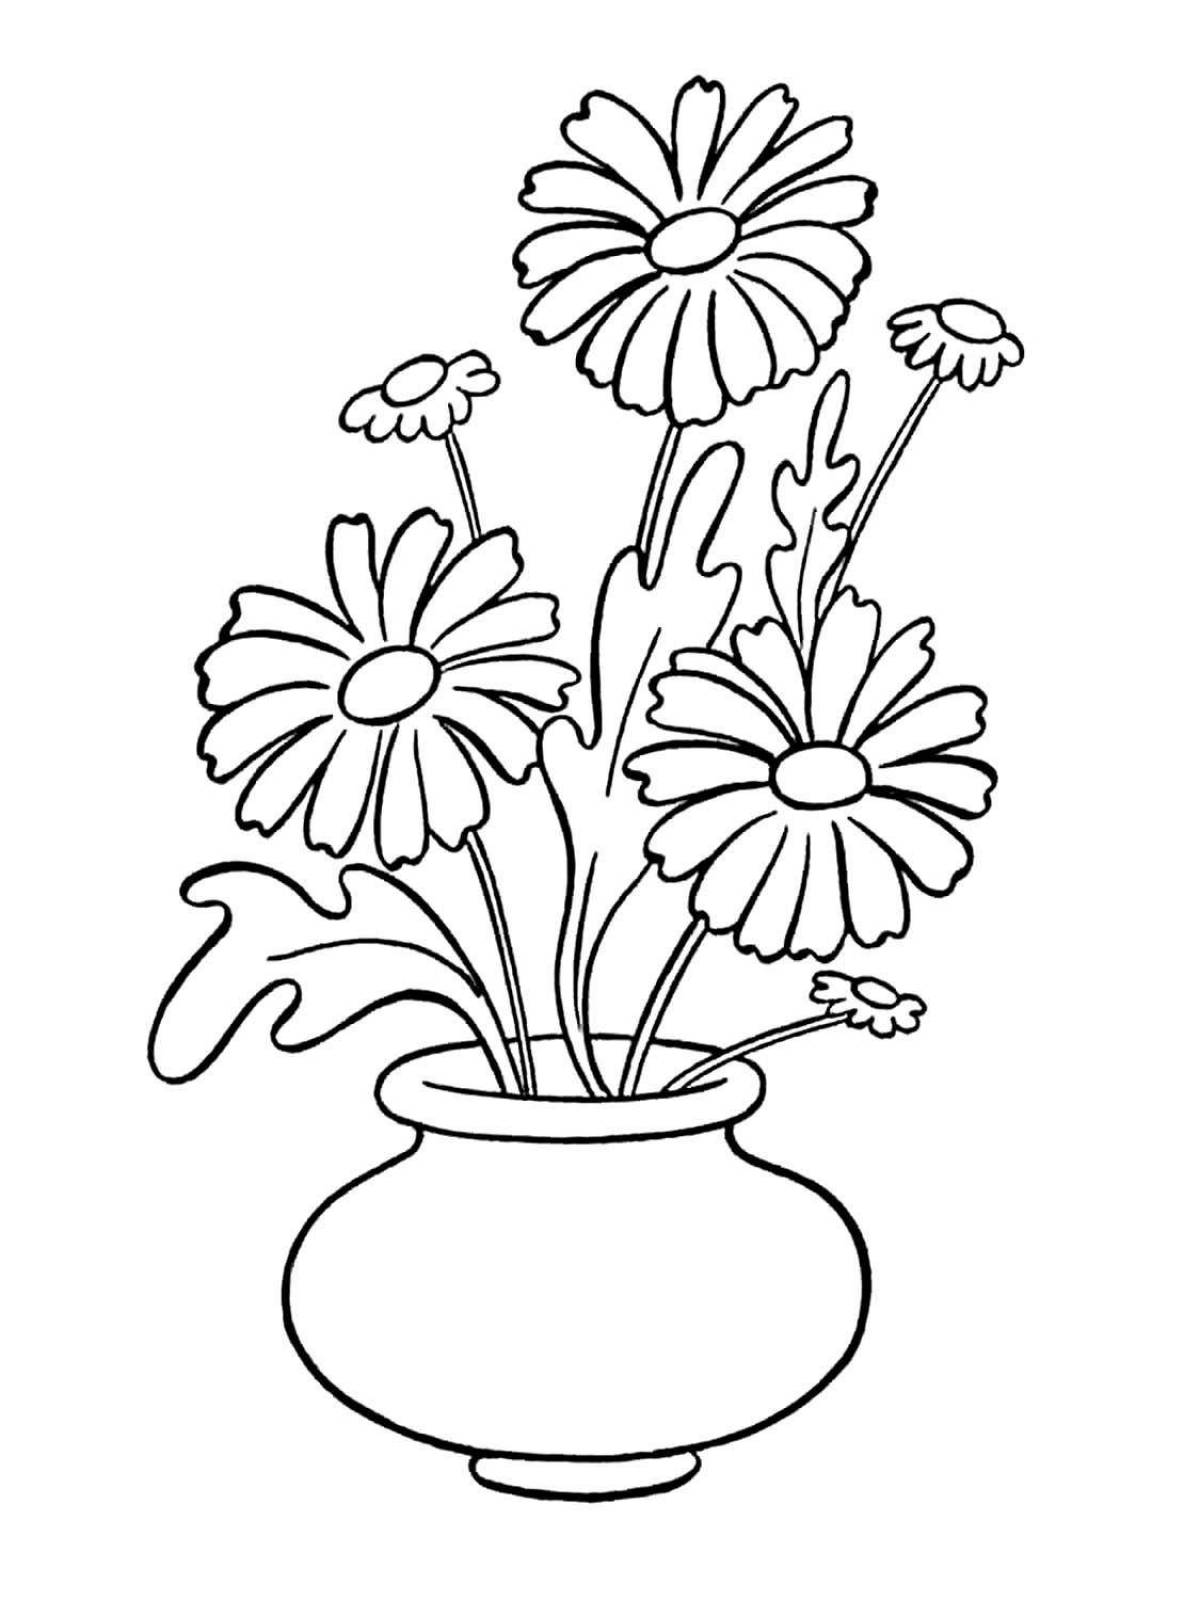 Радостная раскраска цветы в вазе для детей 6-7 лет